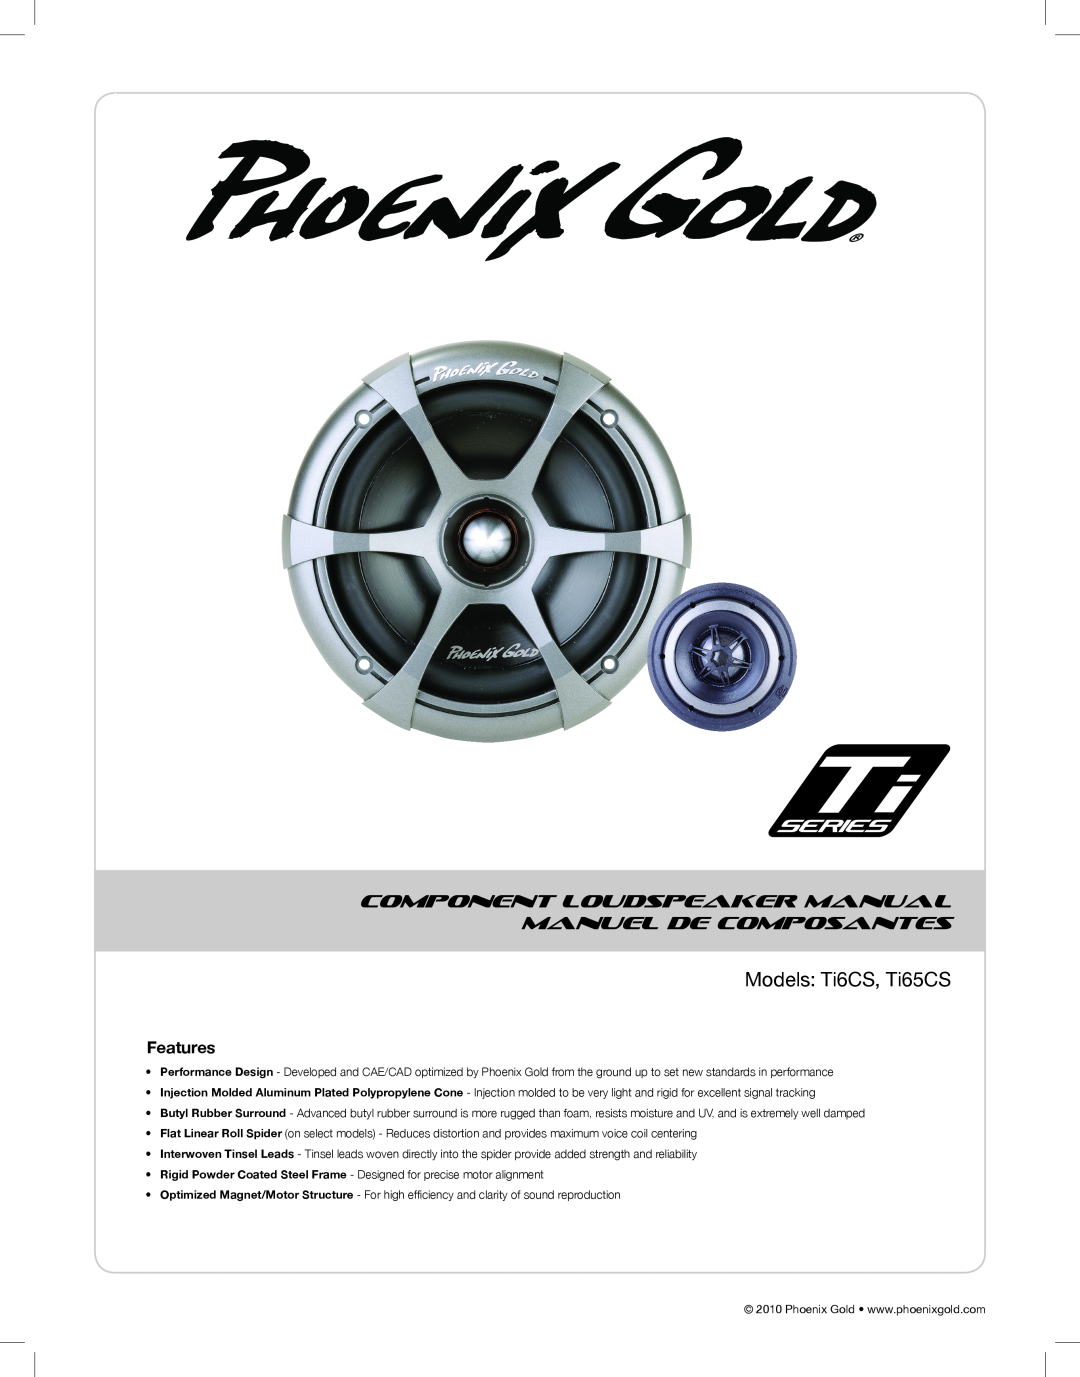 Phoenix Gold TI6CS, TI65CS manual Models Ti6CS, Ti65CS, Component Loudspeaker Manual, Manuel De Composantes, Features 